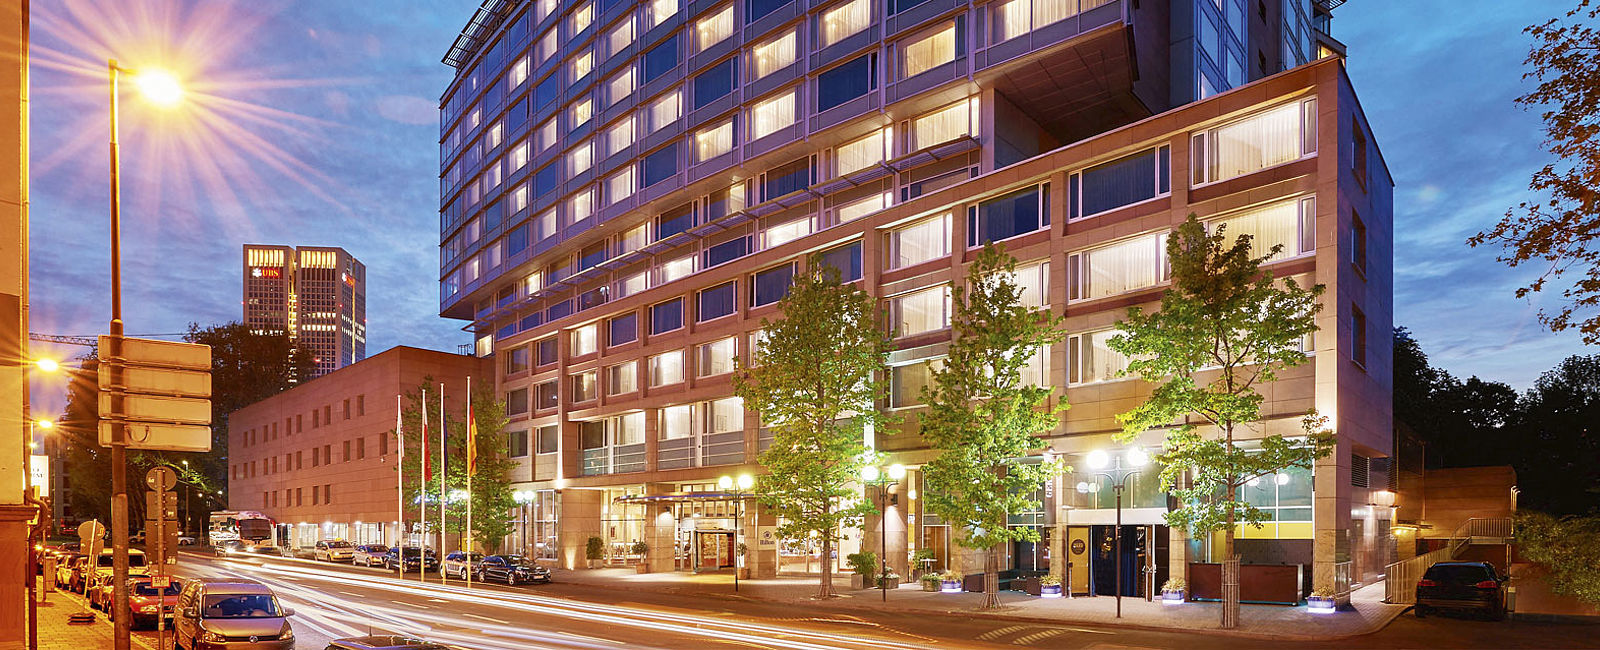 HOTEL TIPPS
 Hilton Frankfurt City Centre, Hessen, Deutschland 
 Im Herzen von Mainhattan 